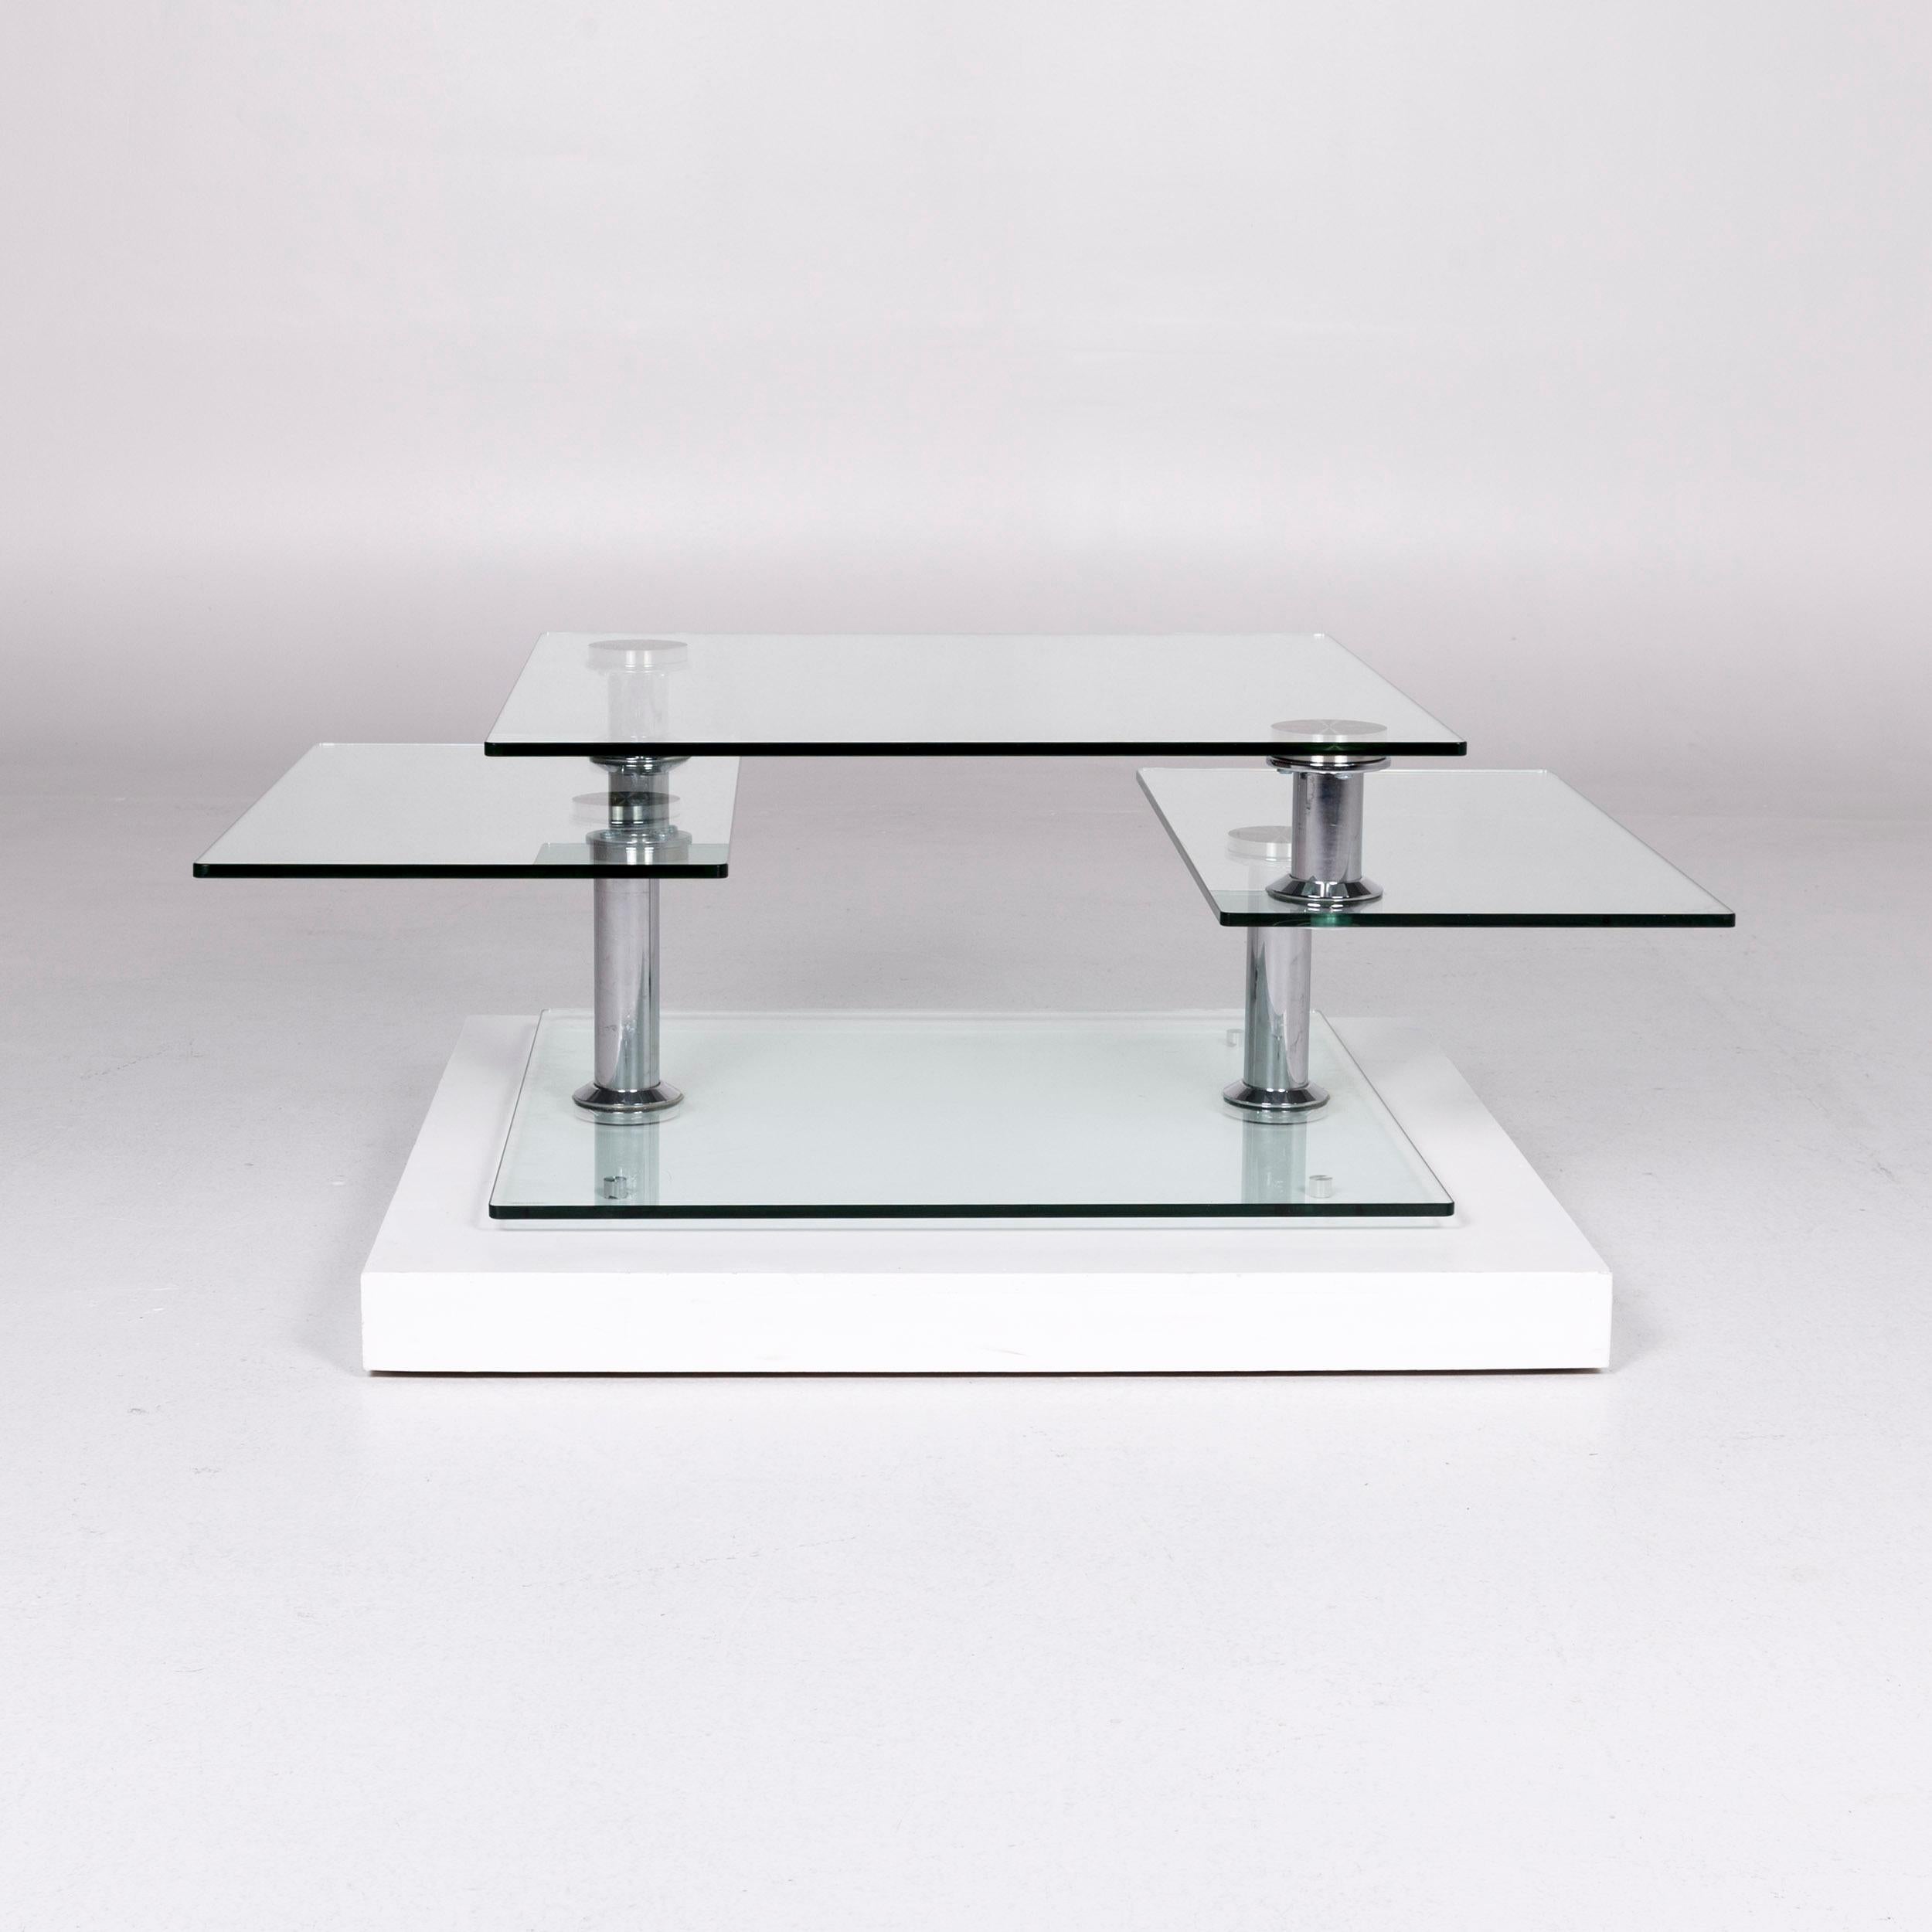 German Hülsta Glass Couchtisch Silber Chrome Function Tisch